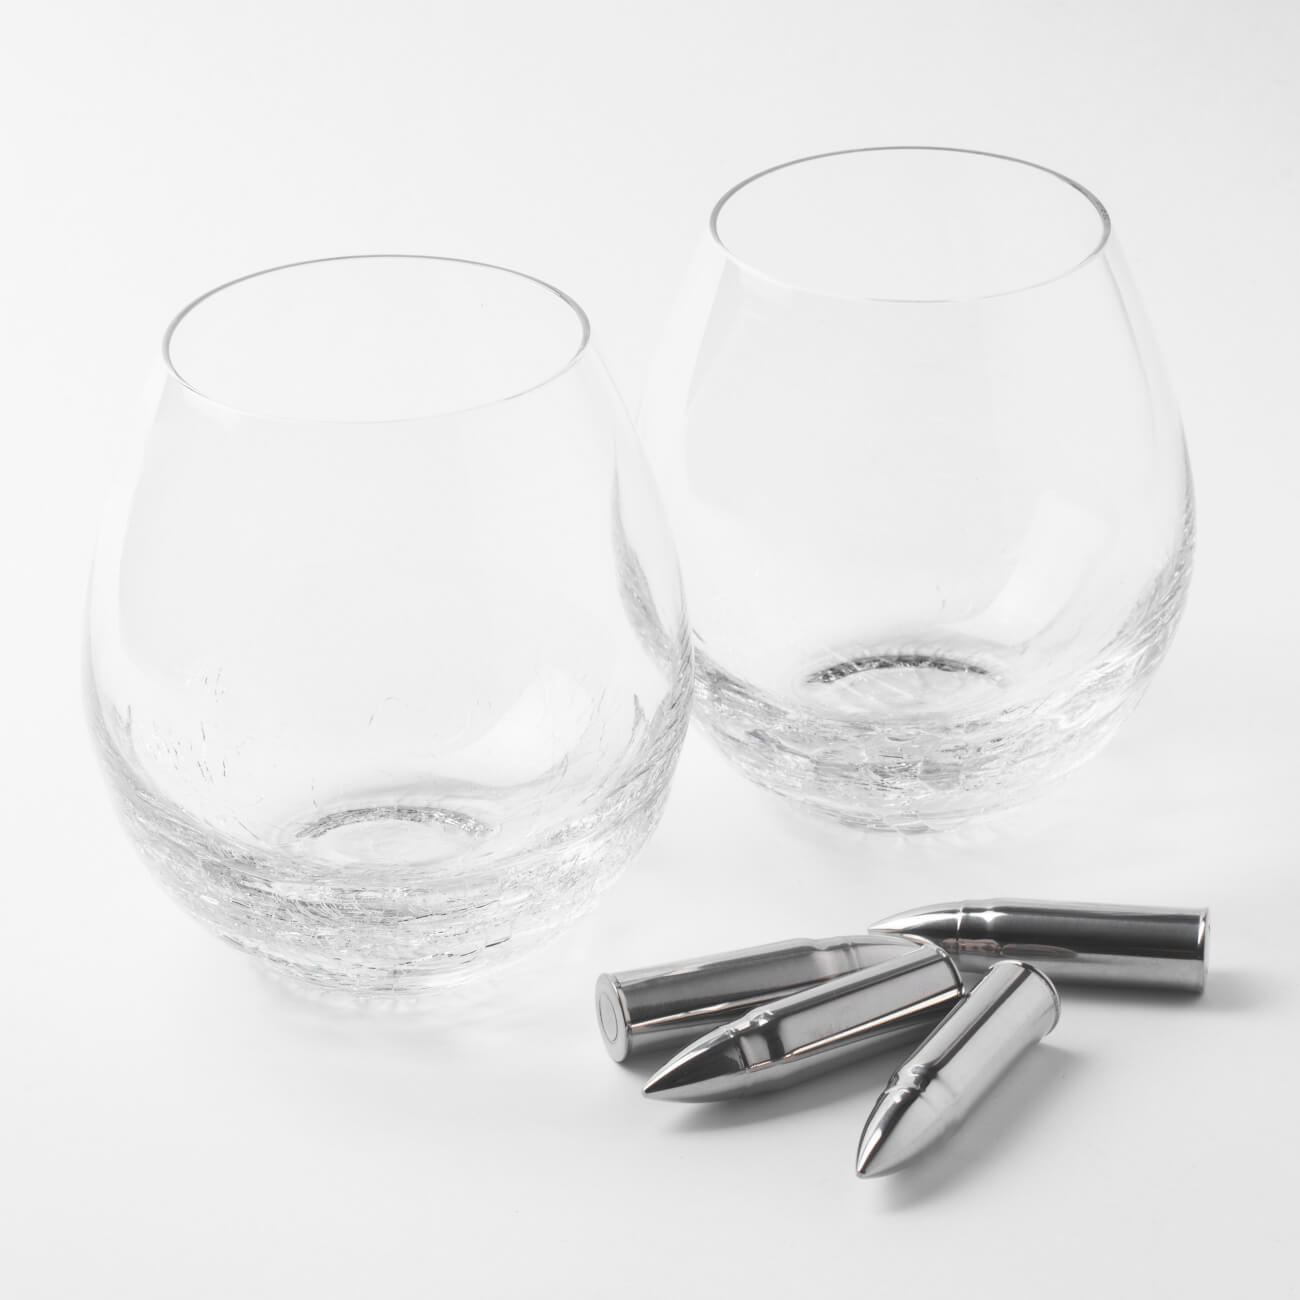 Набор для виски, 2 перс, 6 пр, стаканы/кубики, стекло/сталь, Кракелюр, Пули, Bullet набор для виски 2 перс 6 пр стаканы кубики стекло сталь кракелюр пули bullet